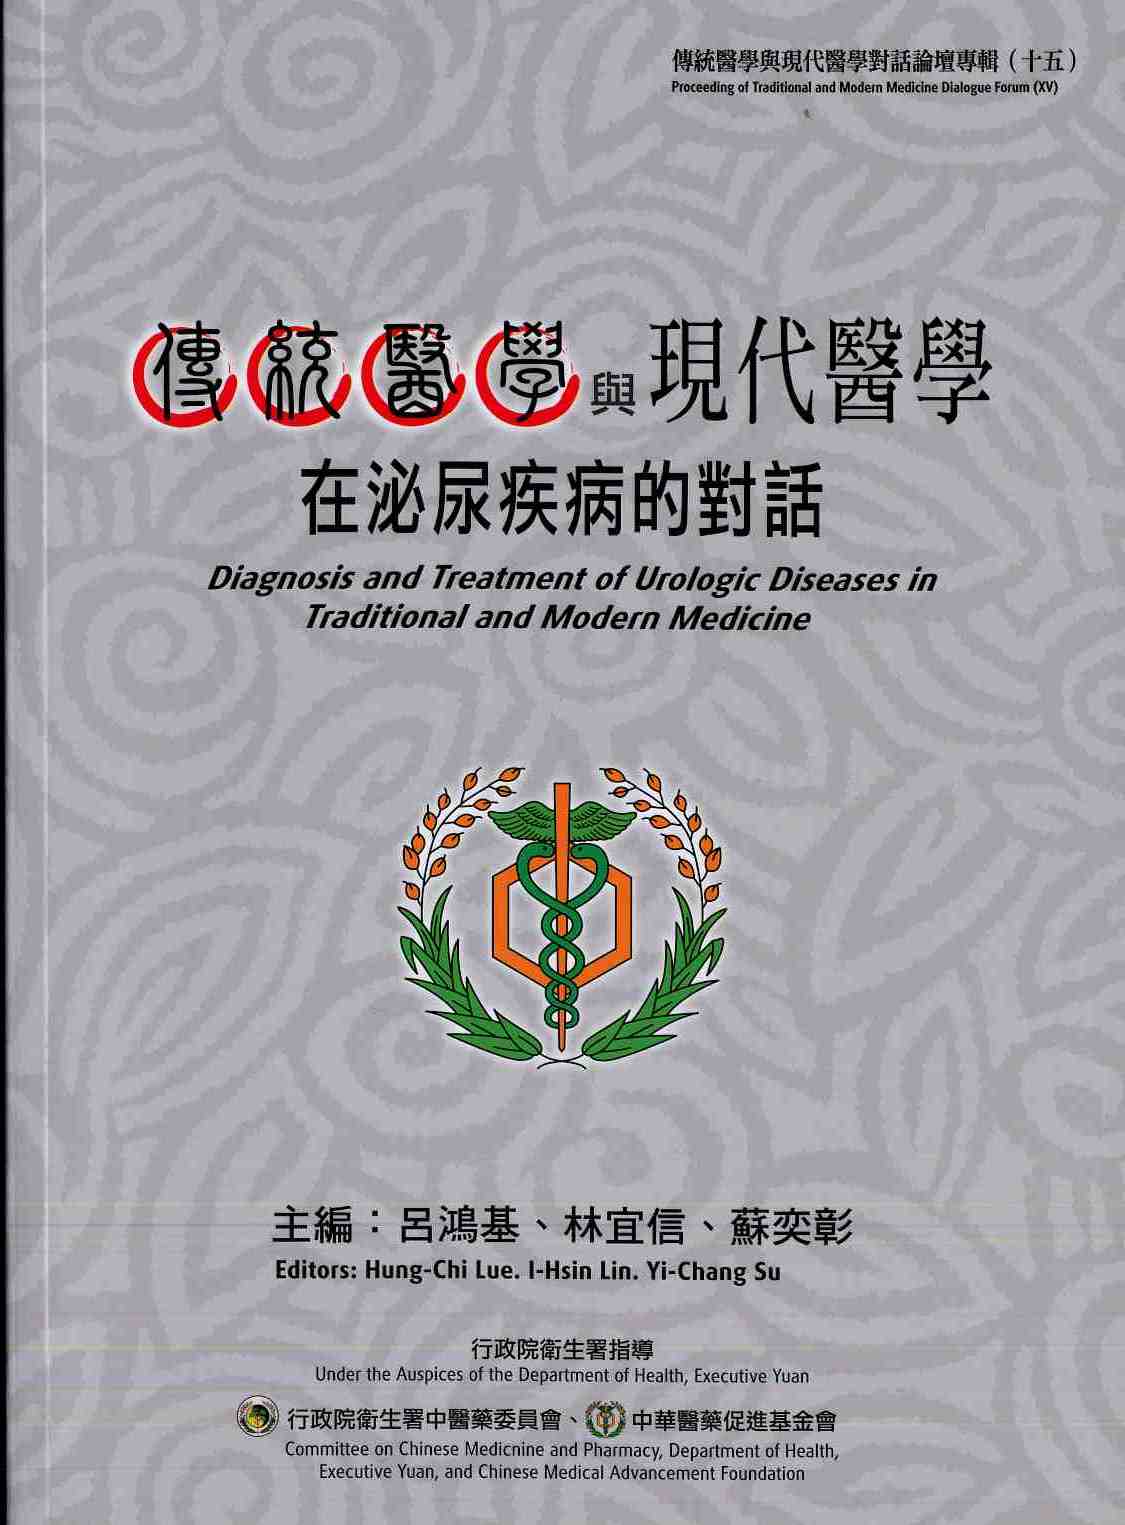 傳統醫學與現代醫學對話論壇專輯(十五)傳統醫學與現代醫學在泌尿疾病的對話